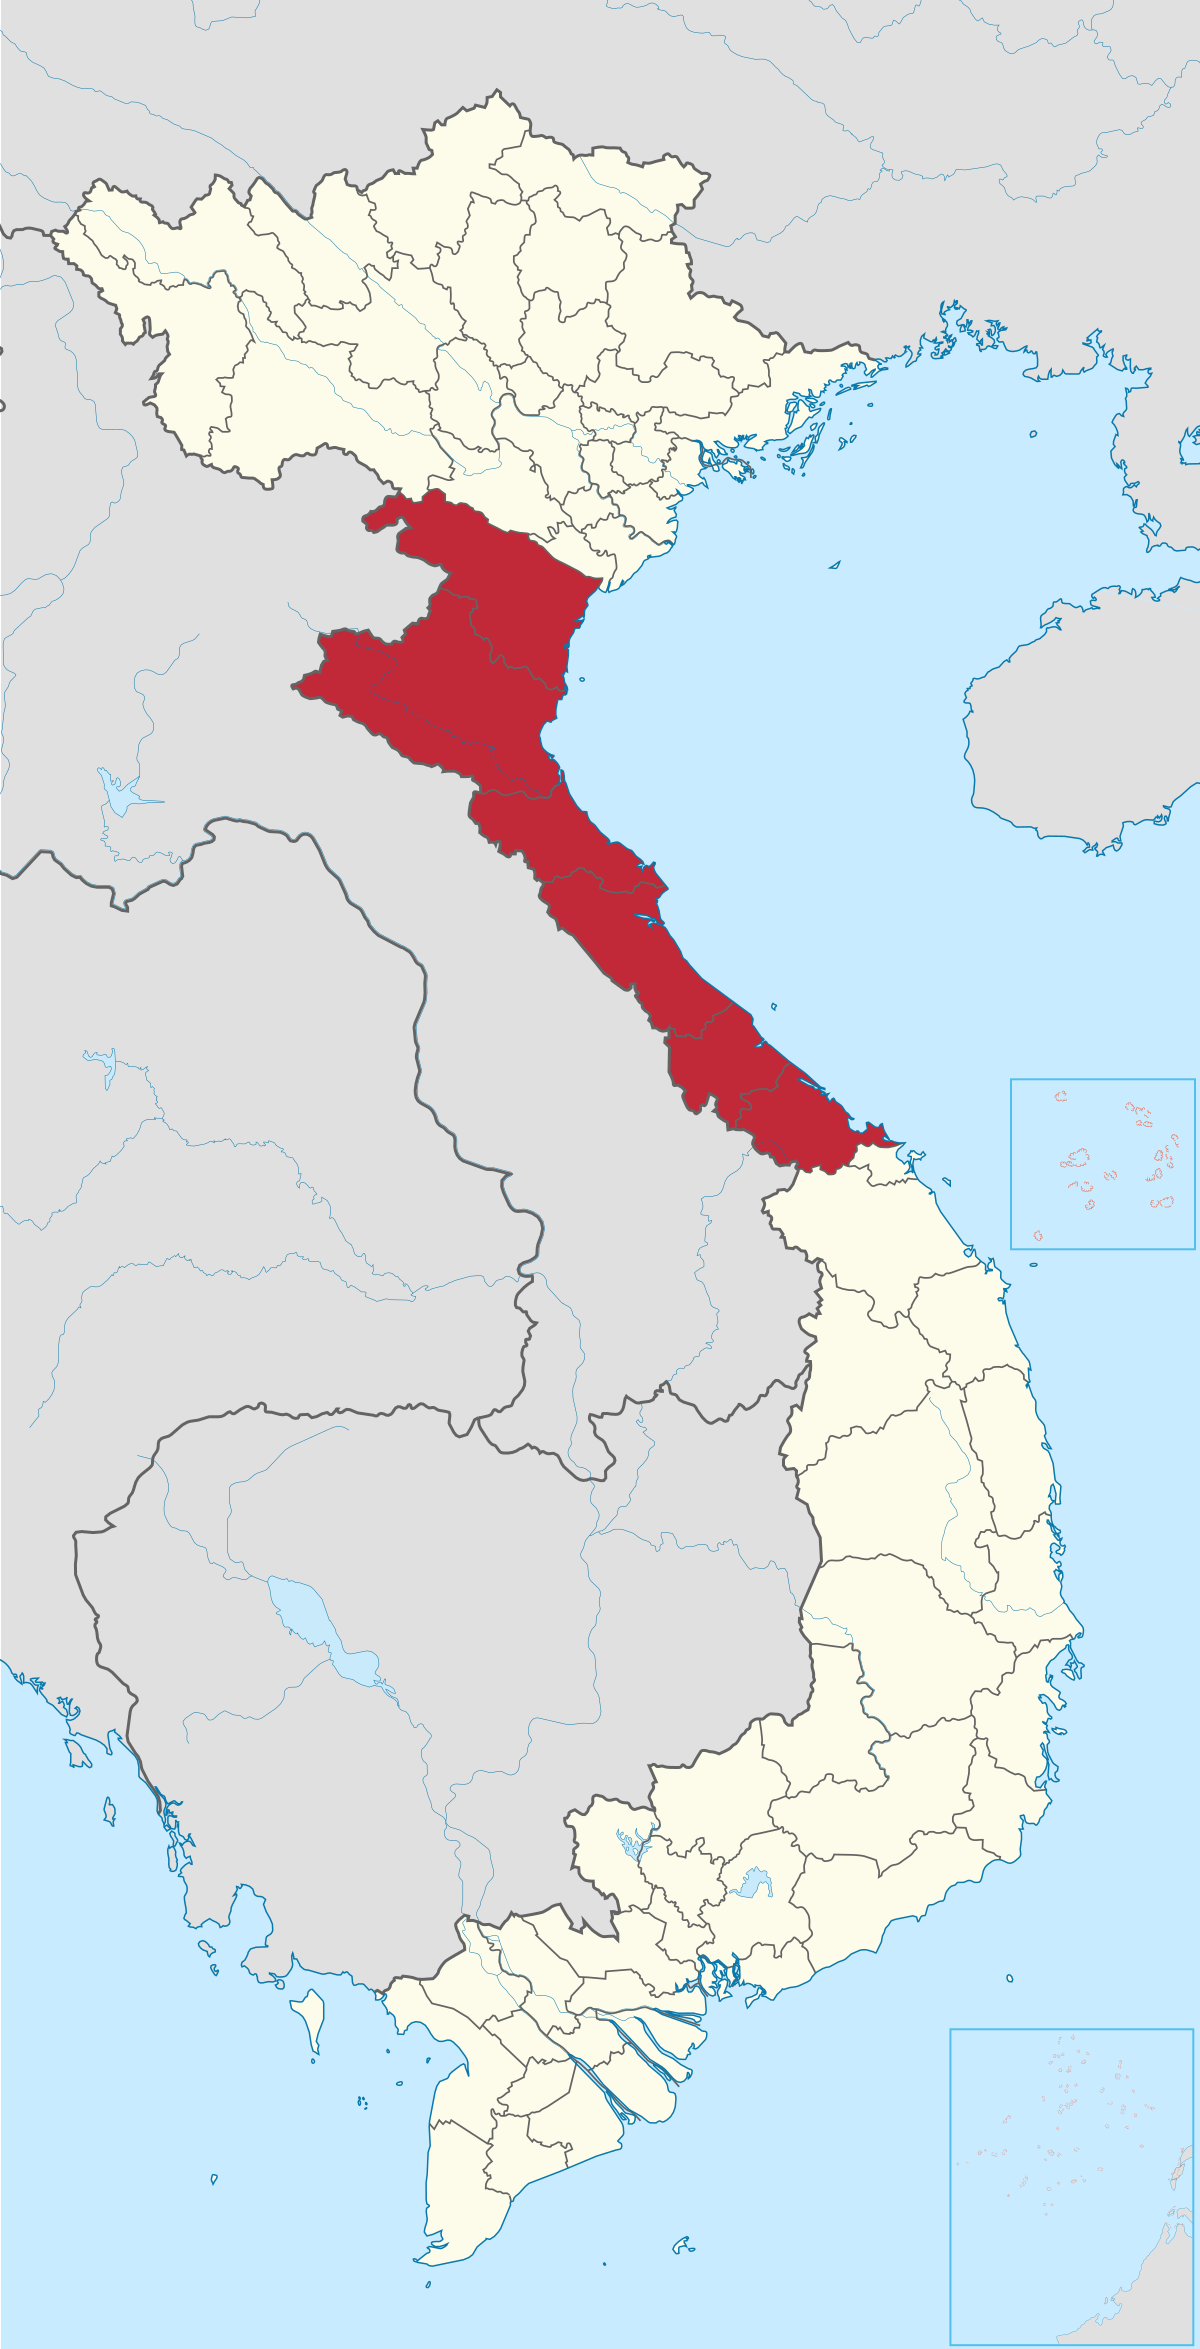 Bắc Trung Bộ – Wikipedia tiếng Việt: Hãy xem qua bản đồ Bắc Trung Bộ Việt Nam năm 2024 trên Wikipedia tiếng Việt và khám phá những địa điểm hấp dẫn. Với những thay đổi về cảnh quan, văn hóa và phong cách sống, bản đồ sẽ giúp bạn có một chuyến đi tuyệt vời.